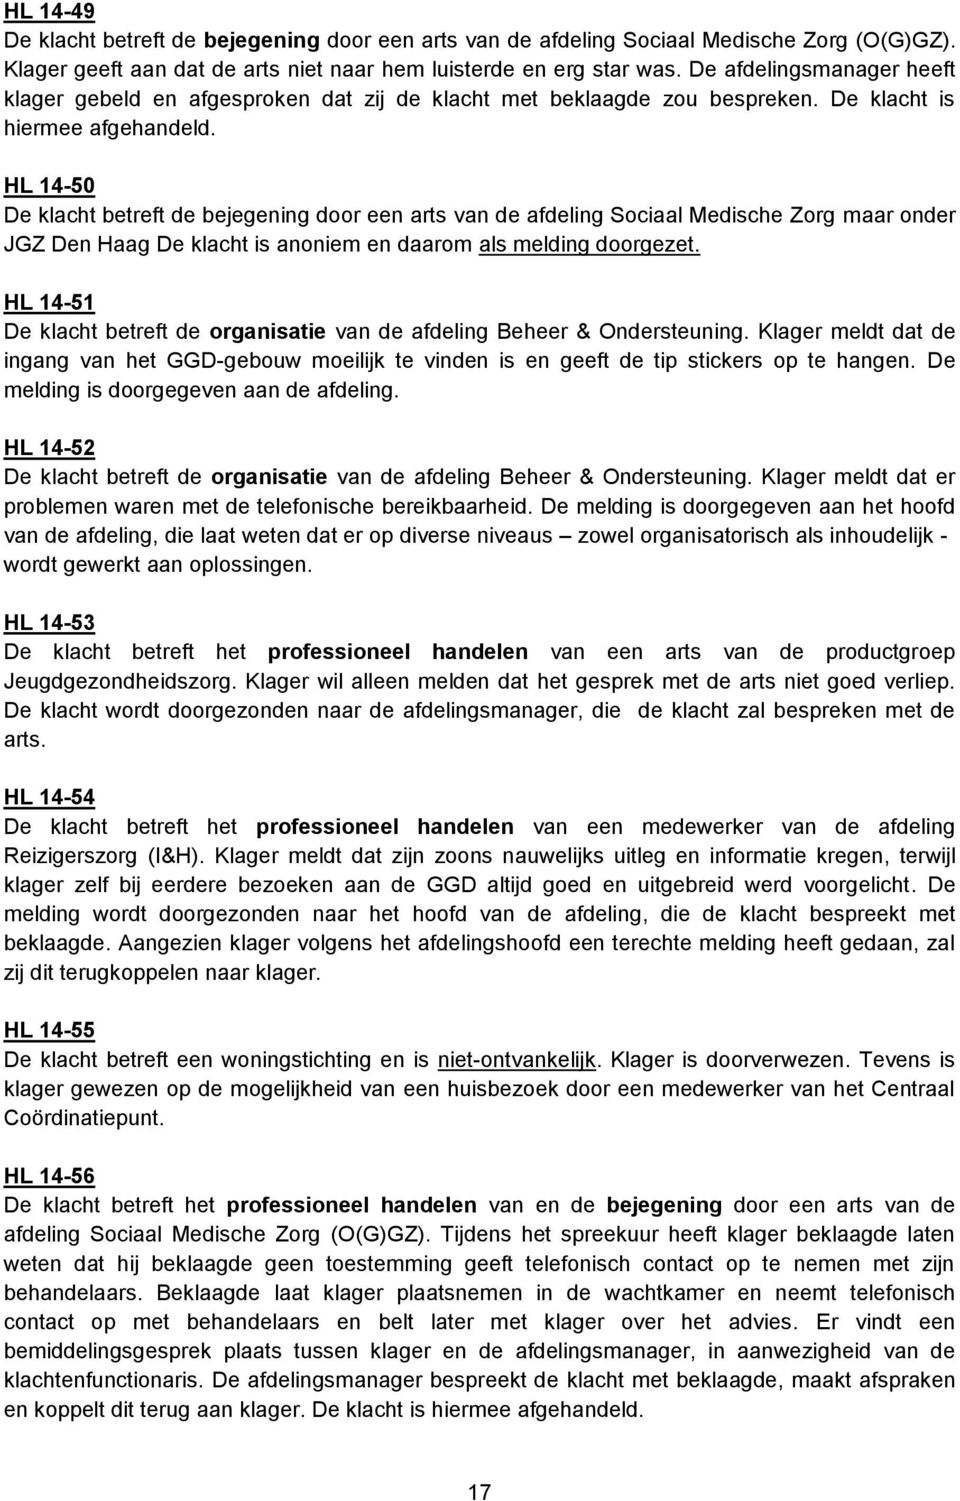 HL 14-50 De klacht betreft de bejegening door een arts van de afdeling Sociaal Medische Zorg maar onder JGZ Den Haag De klacht is anoniem en daarom als melding doorgezet.